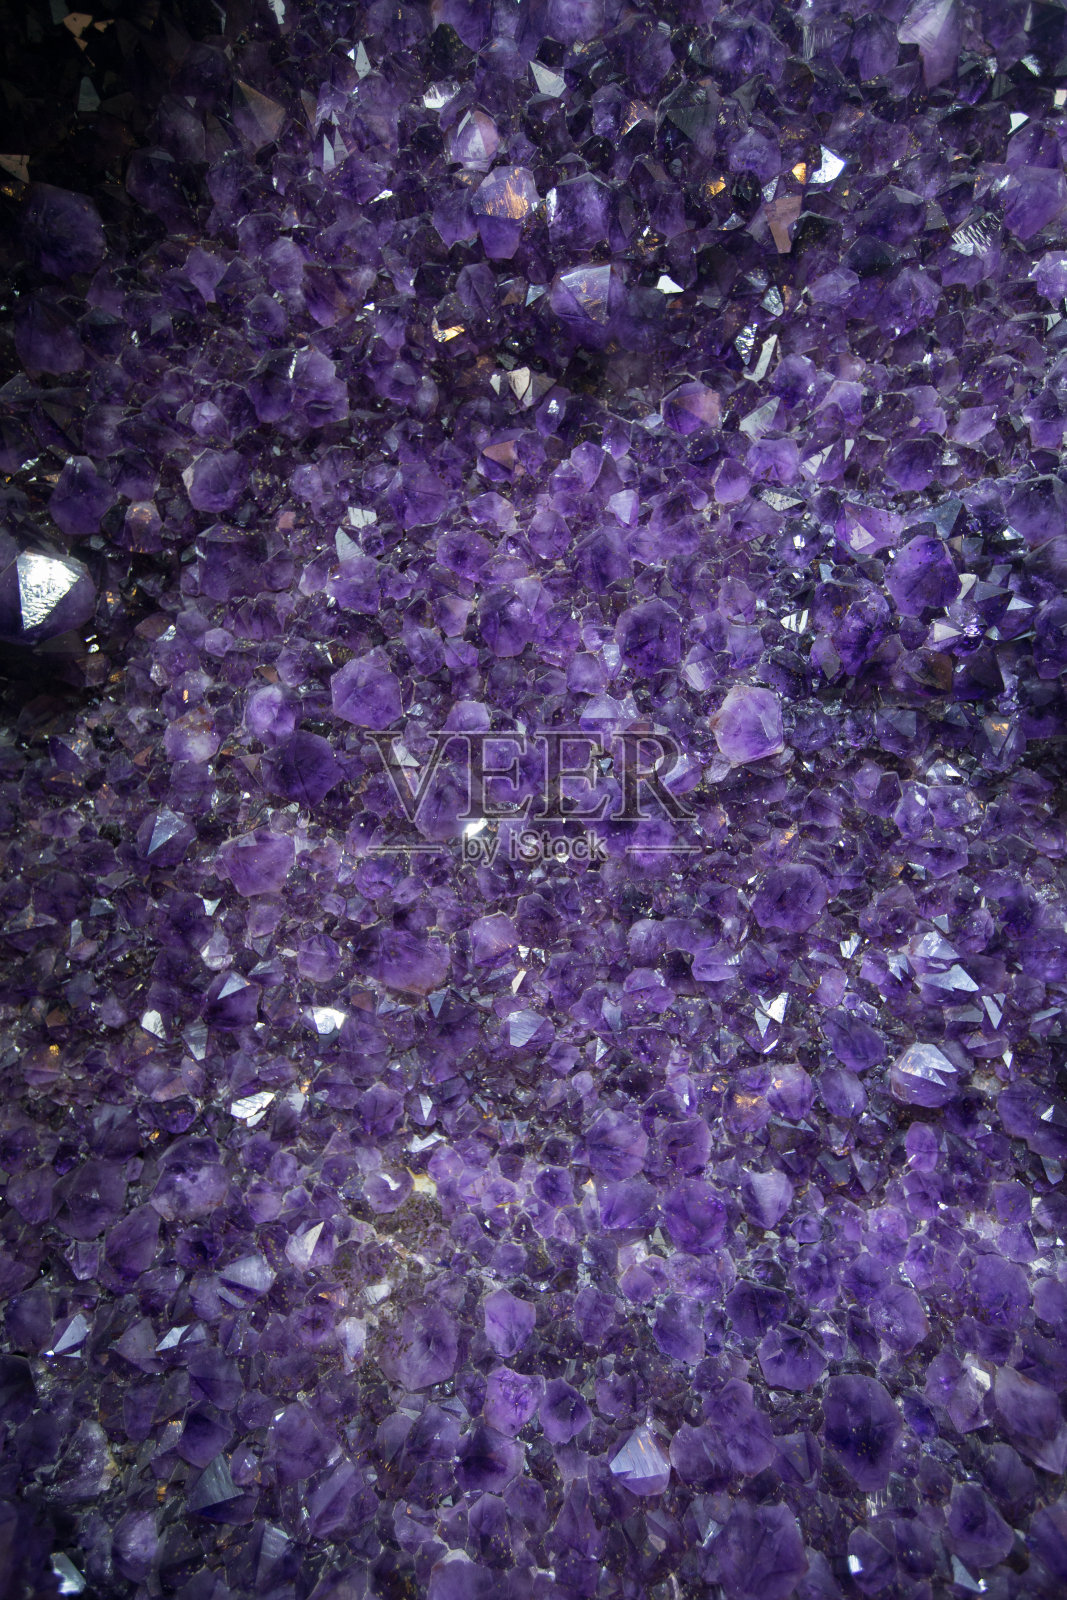 水晶石矿物表面有紫色粗紫水晶、紫晶石英晶体、紫晶晶晶晶。次珍贵的宝石照片摄影图片